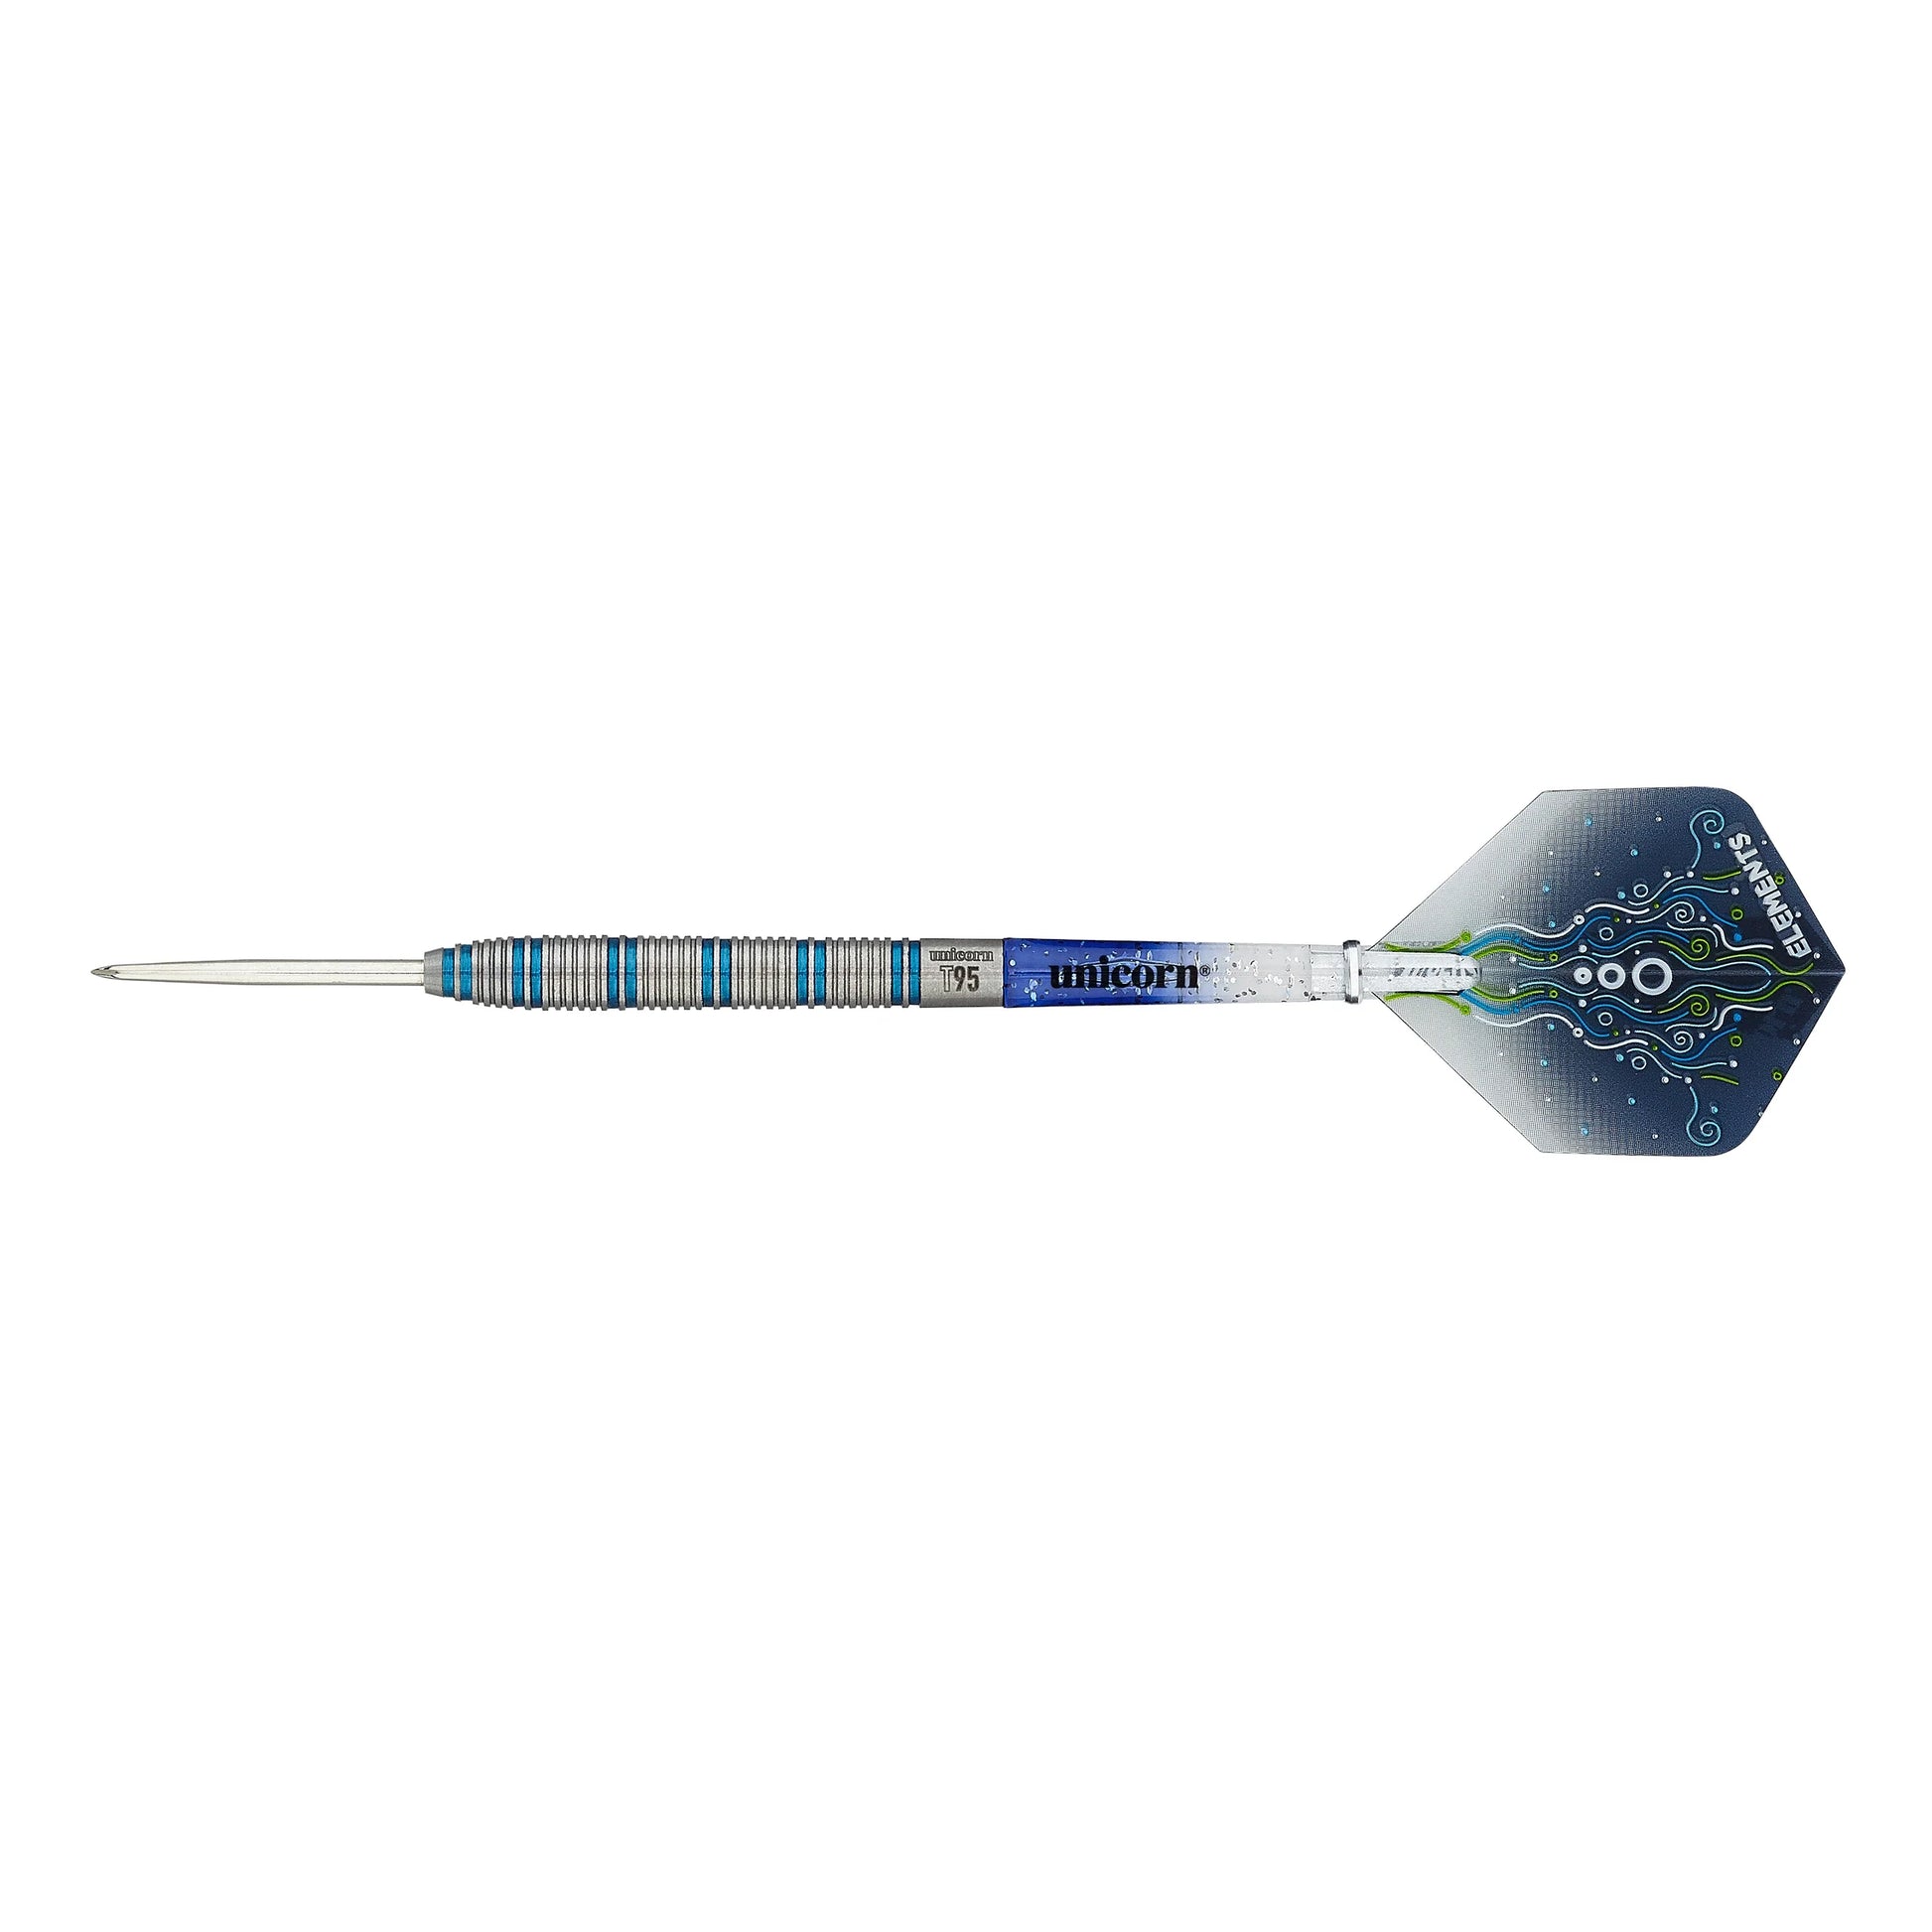 Unicorn T95 Core XL Blue 22g Darts